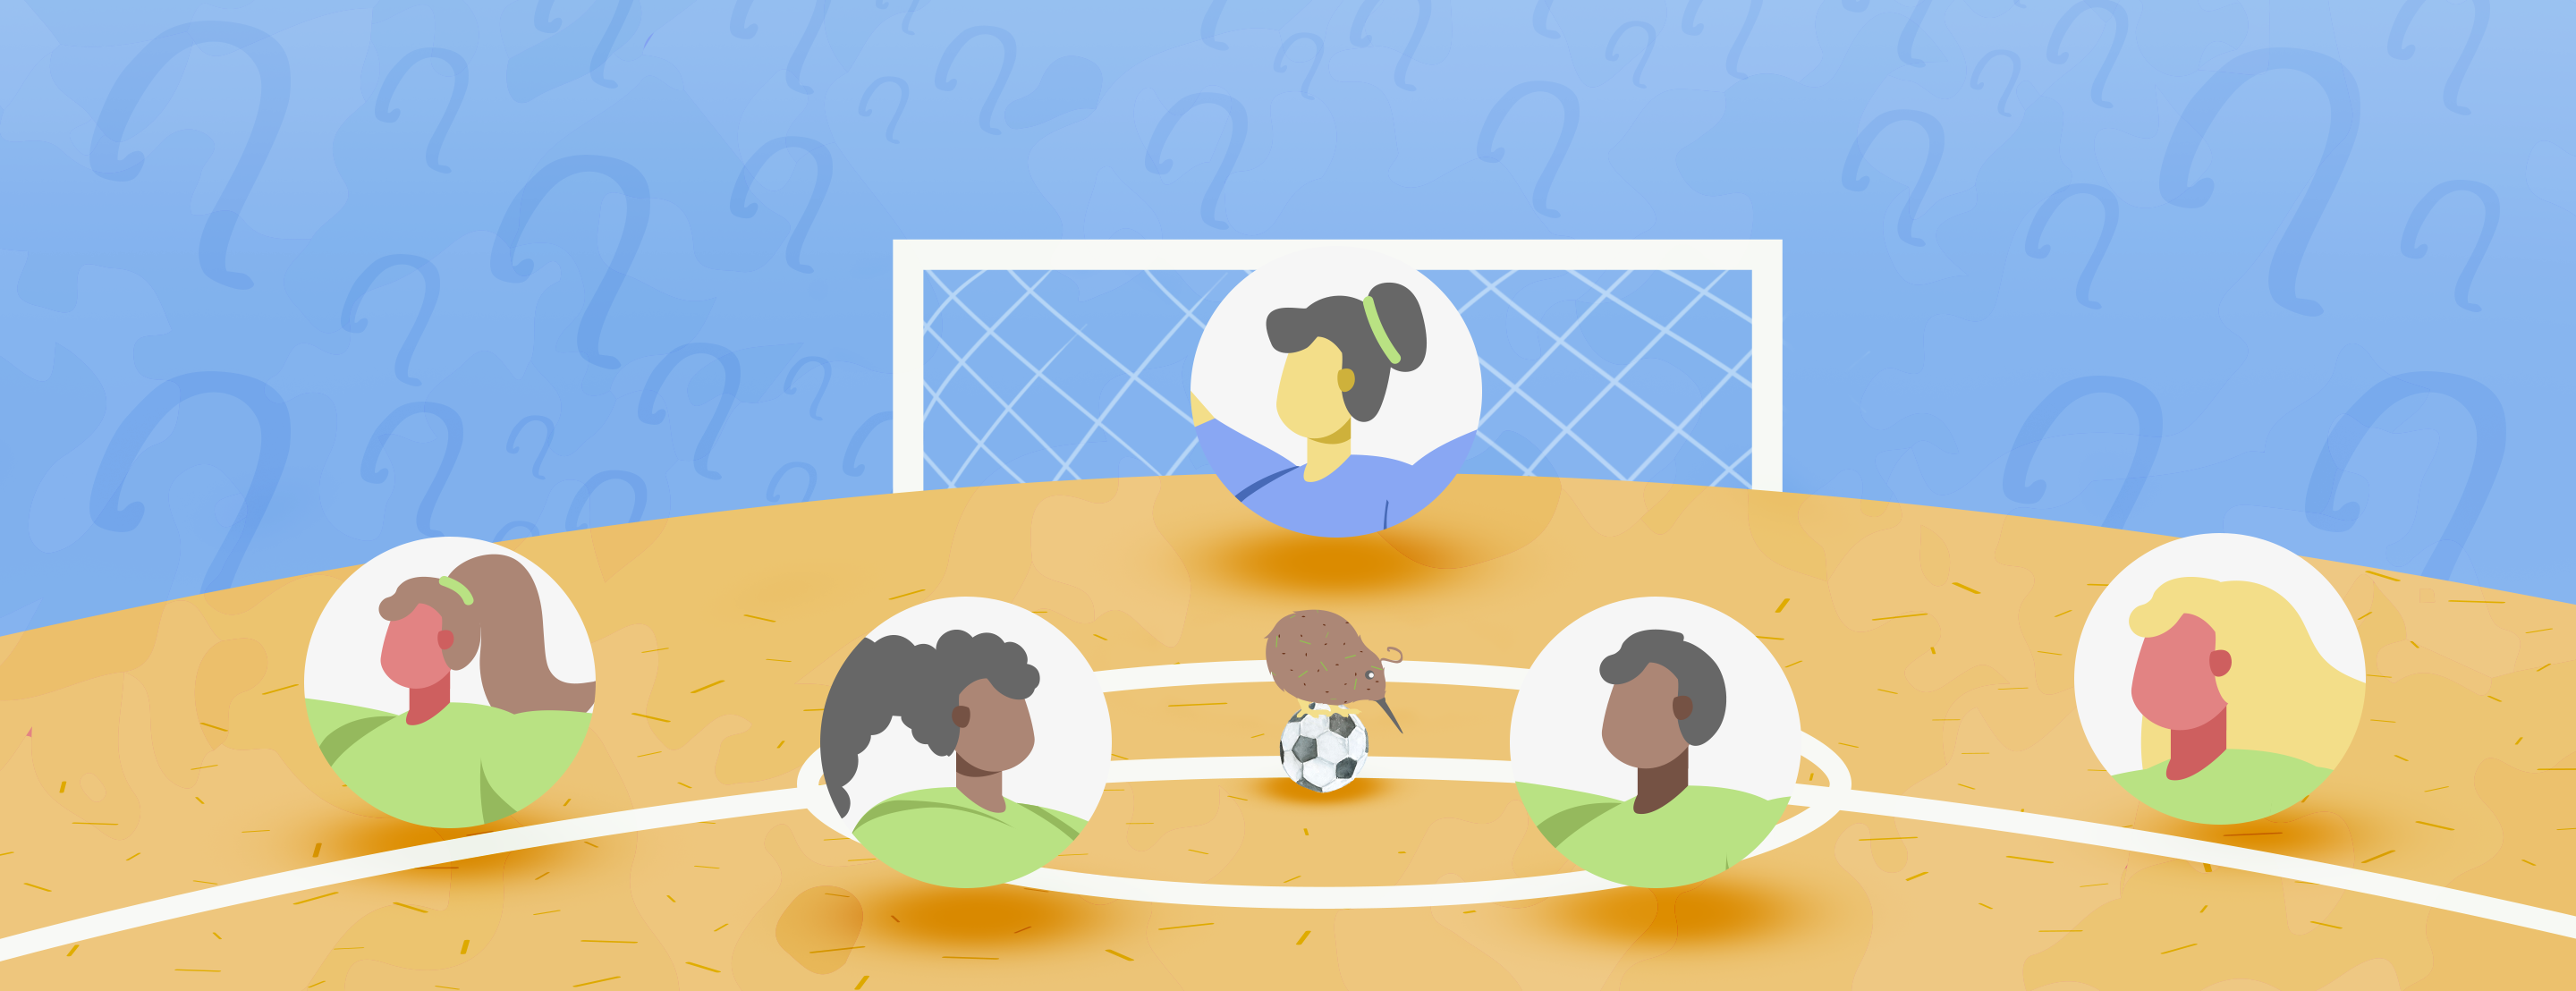 Assistir futebol ao vivo online grátis pelo Fifa + ( oficial e legalizado )  